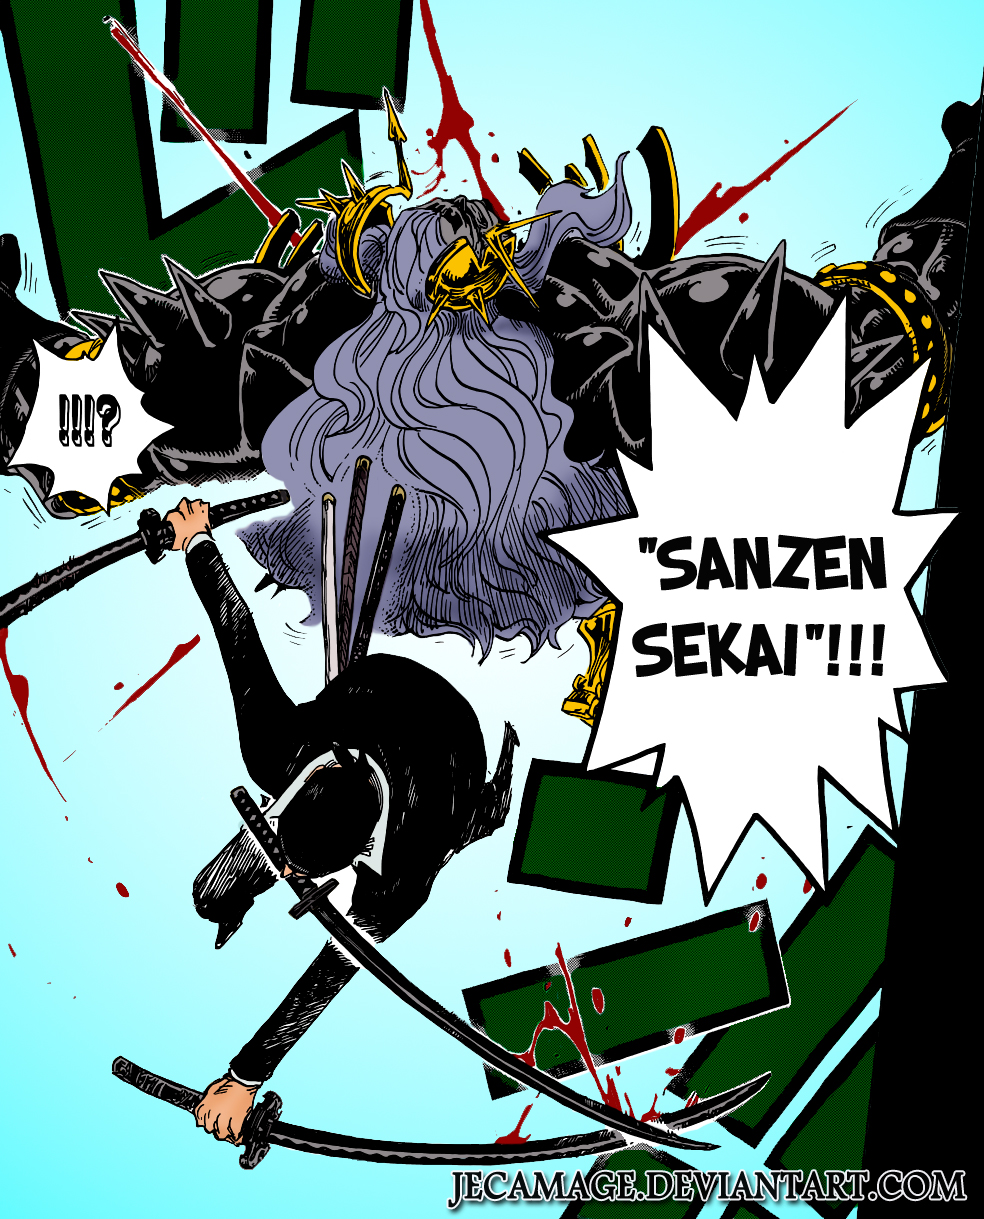 One Piece 778 Sanzen Sekai By Jecamage On Deviantart